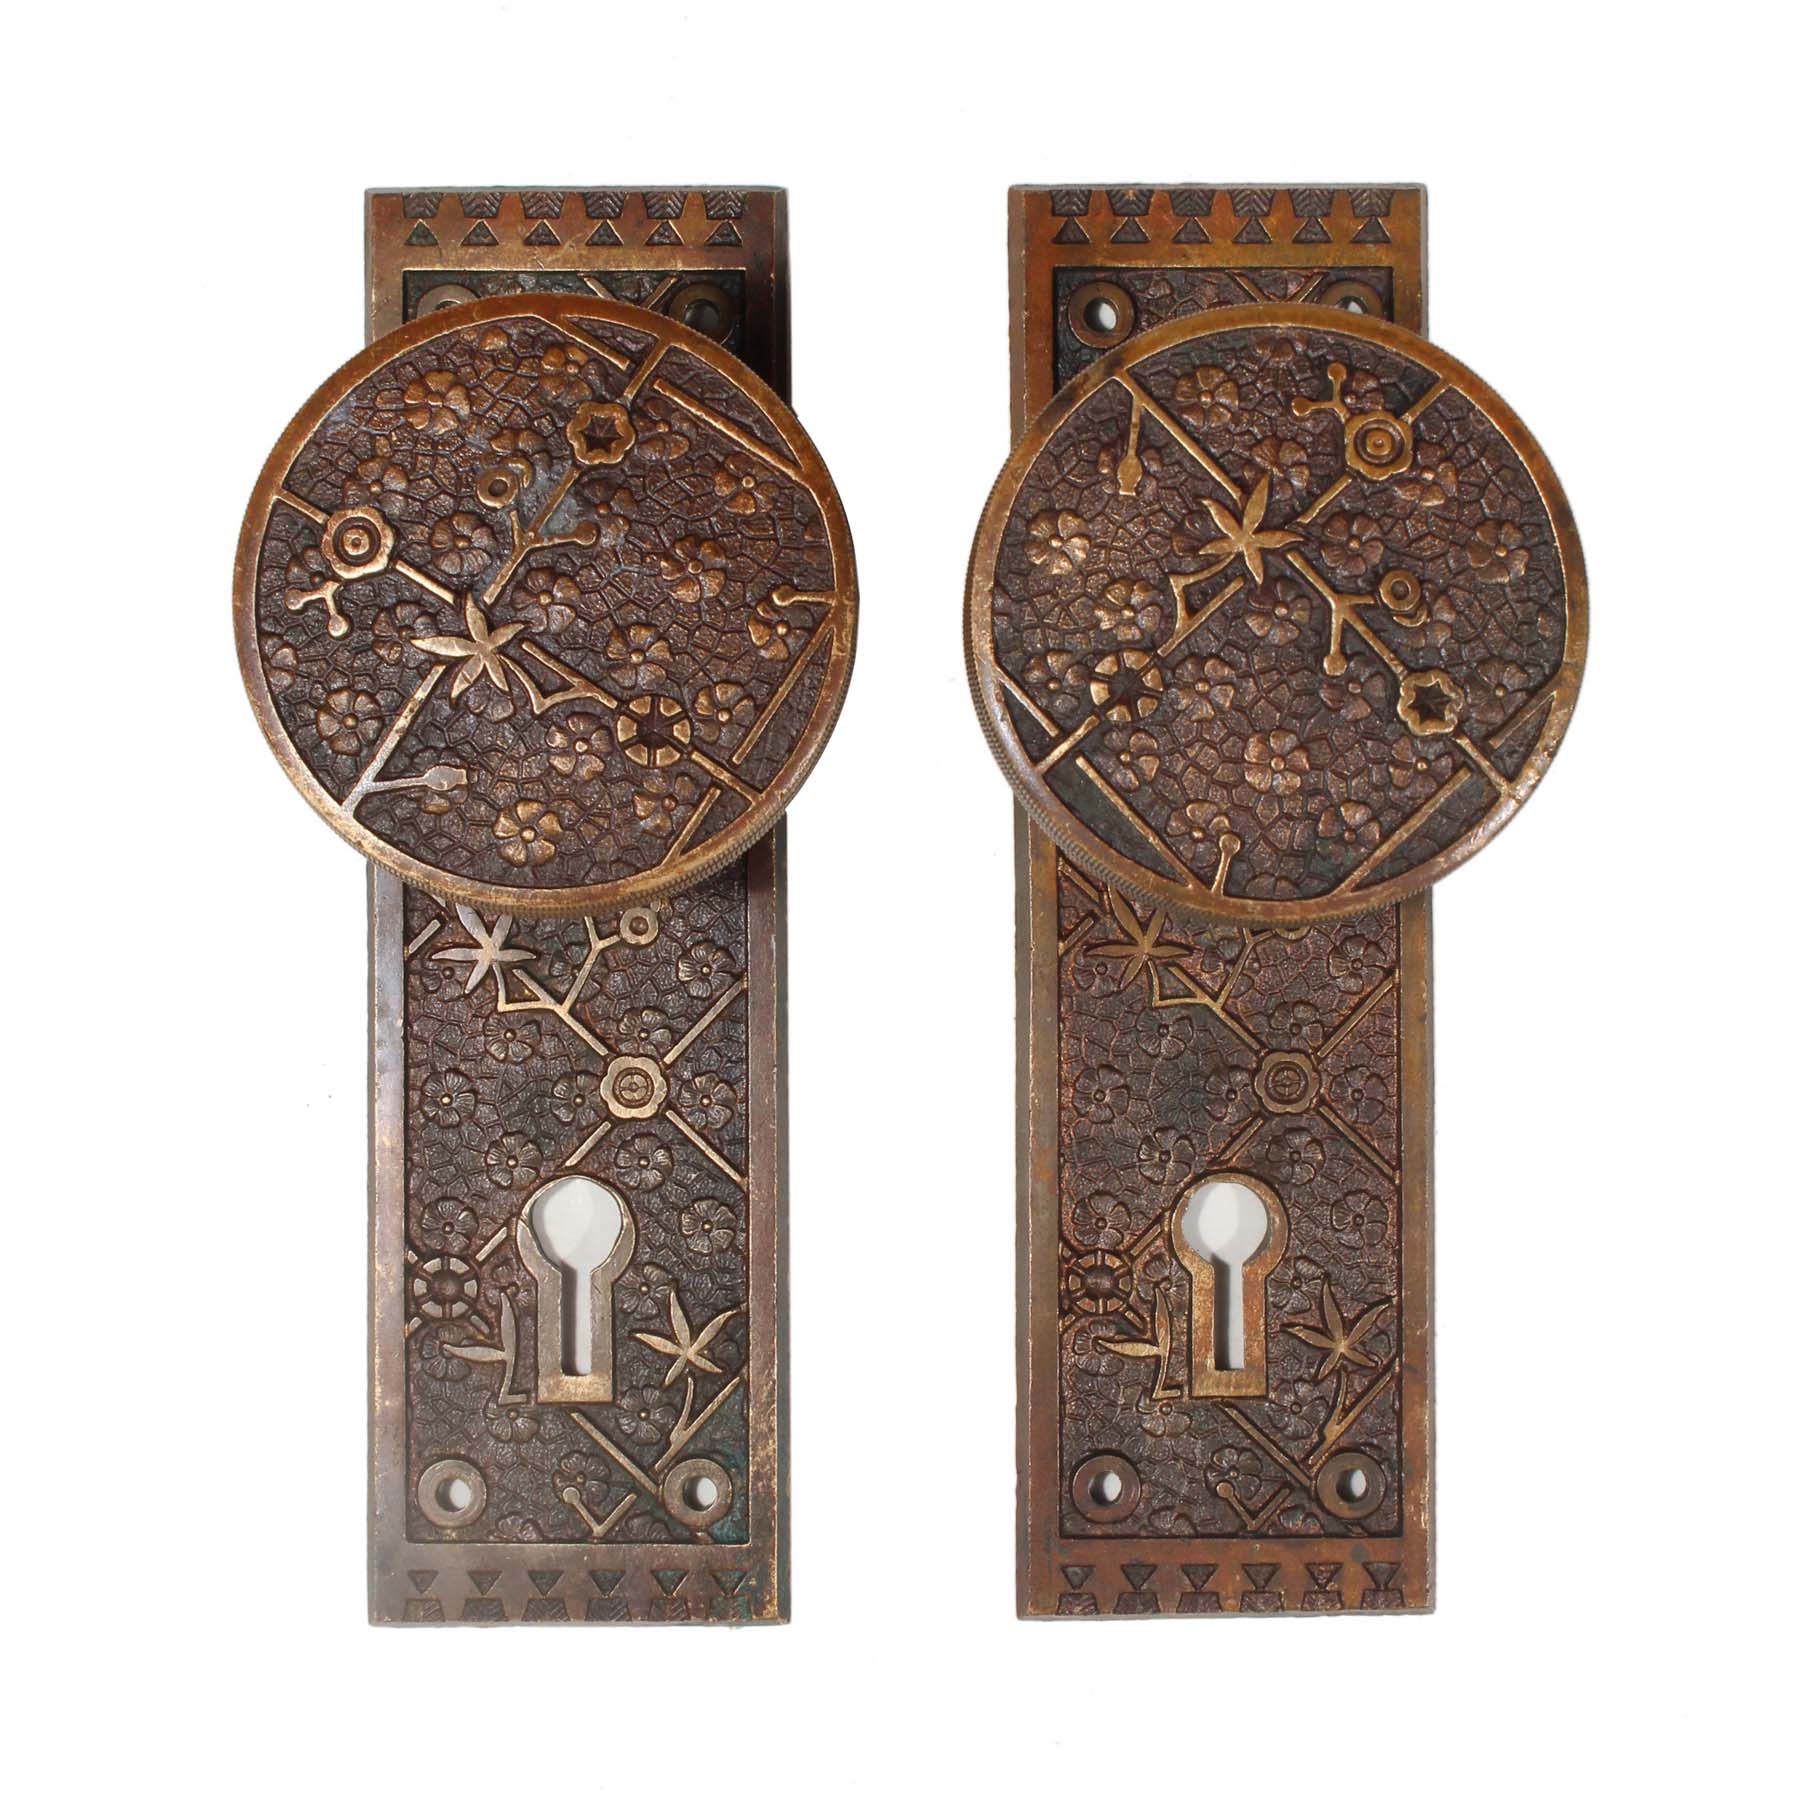 SOLD Antique Eastlake Door Hardware Set “Ekado” by Sargent-69724